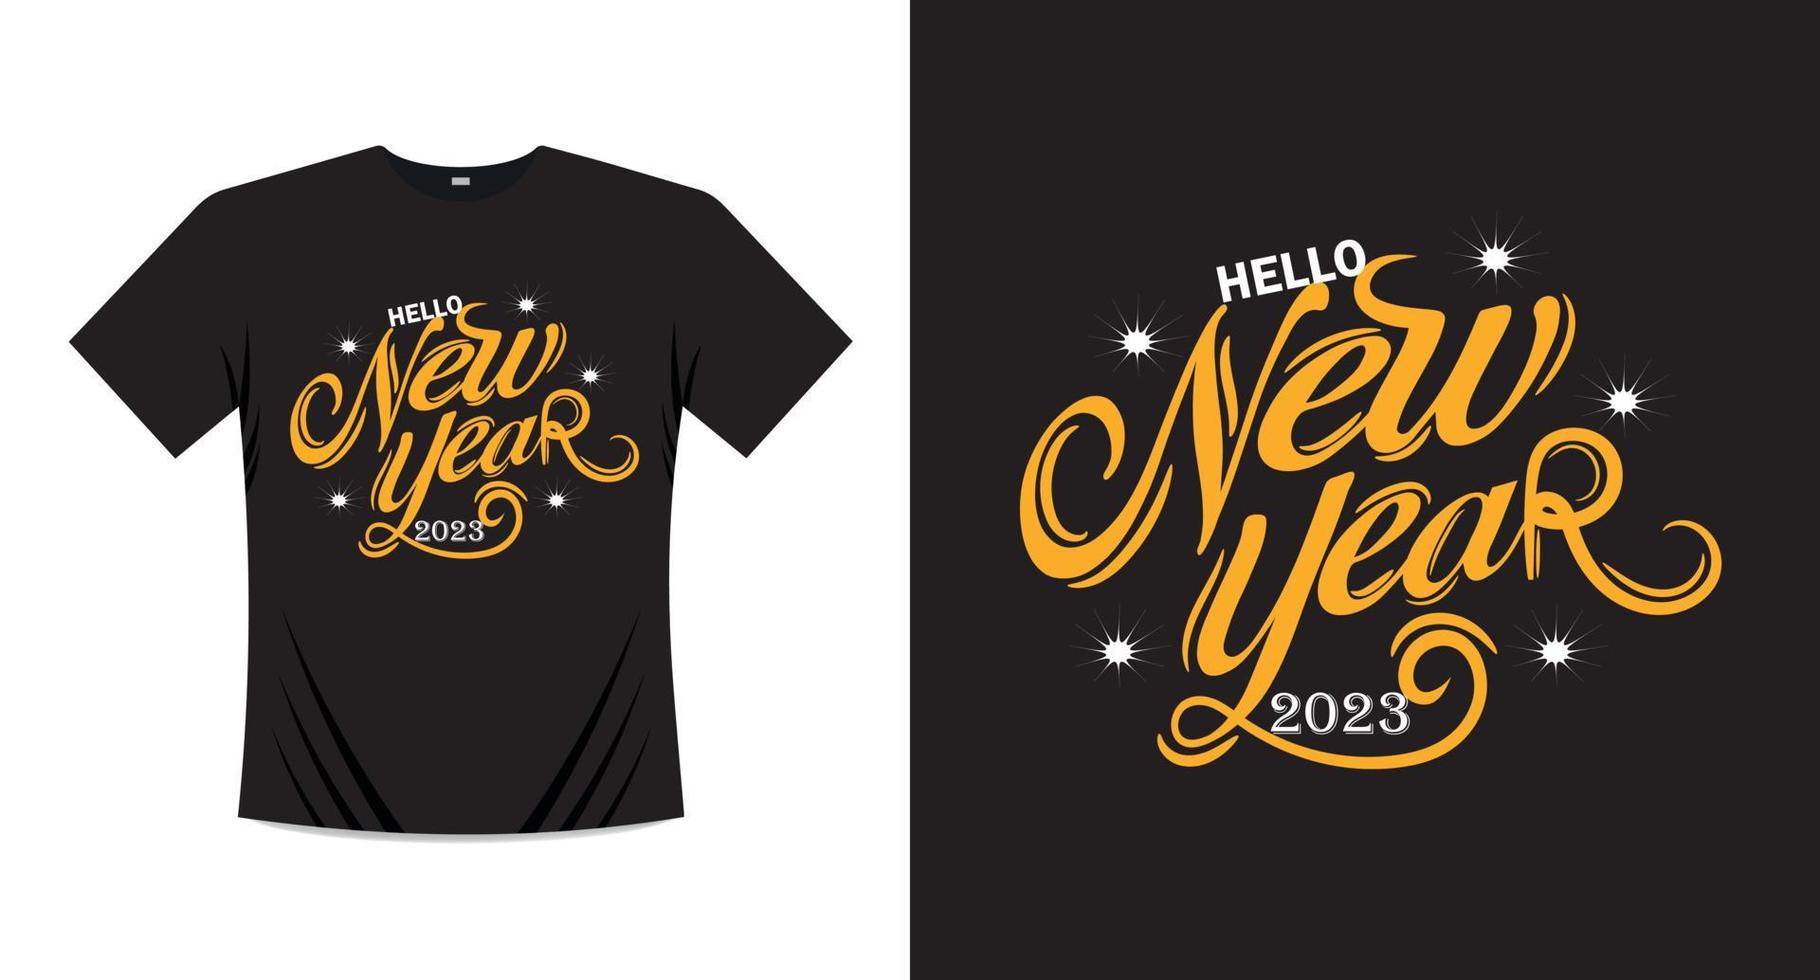 Lycklig ny år t-shirt skriva ut design vektor